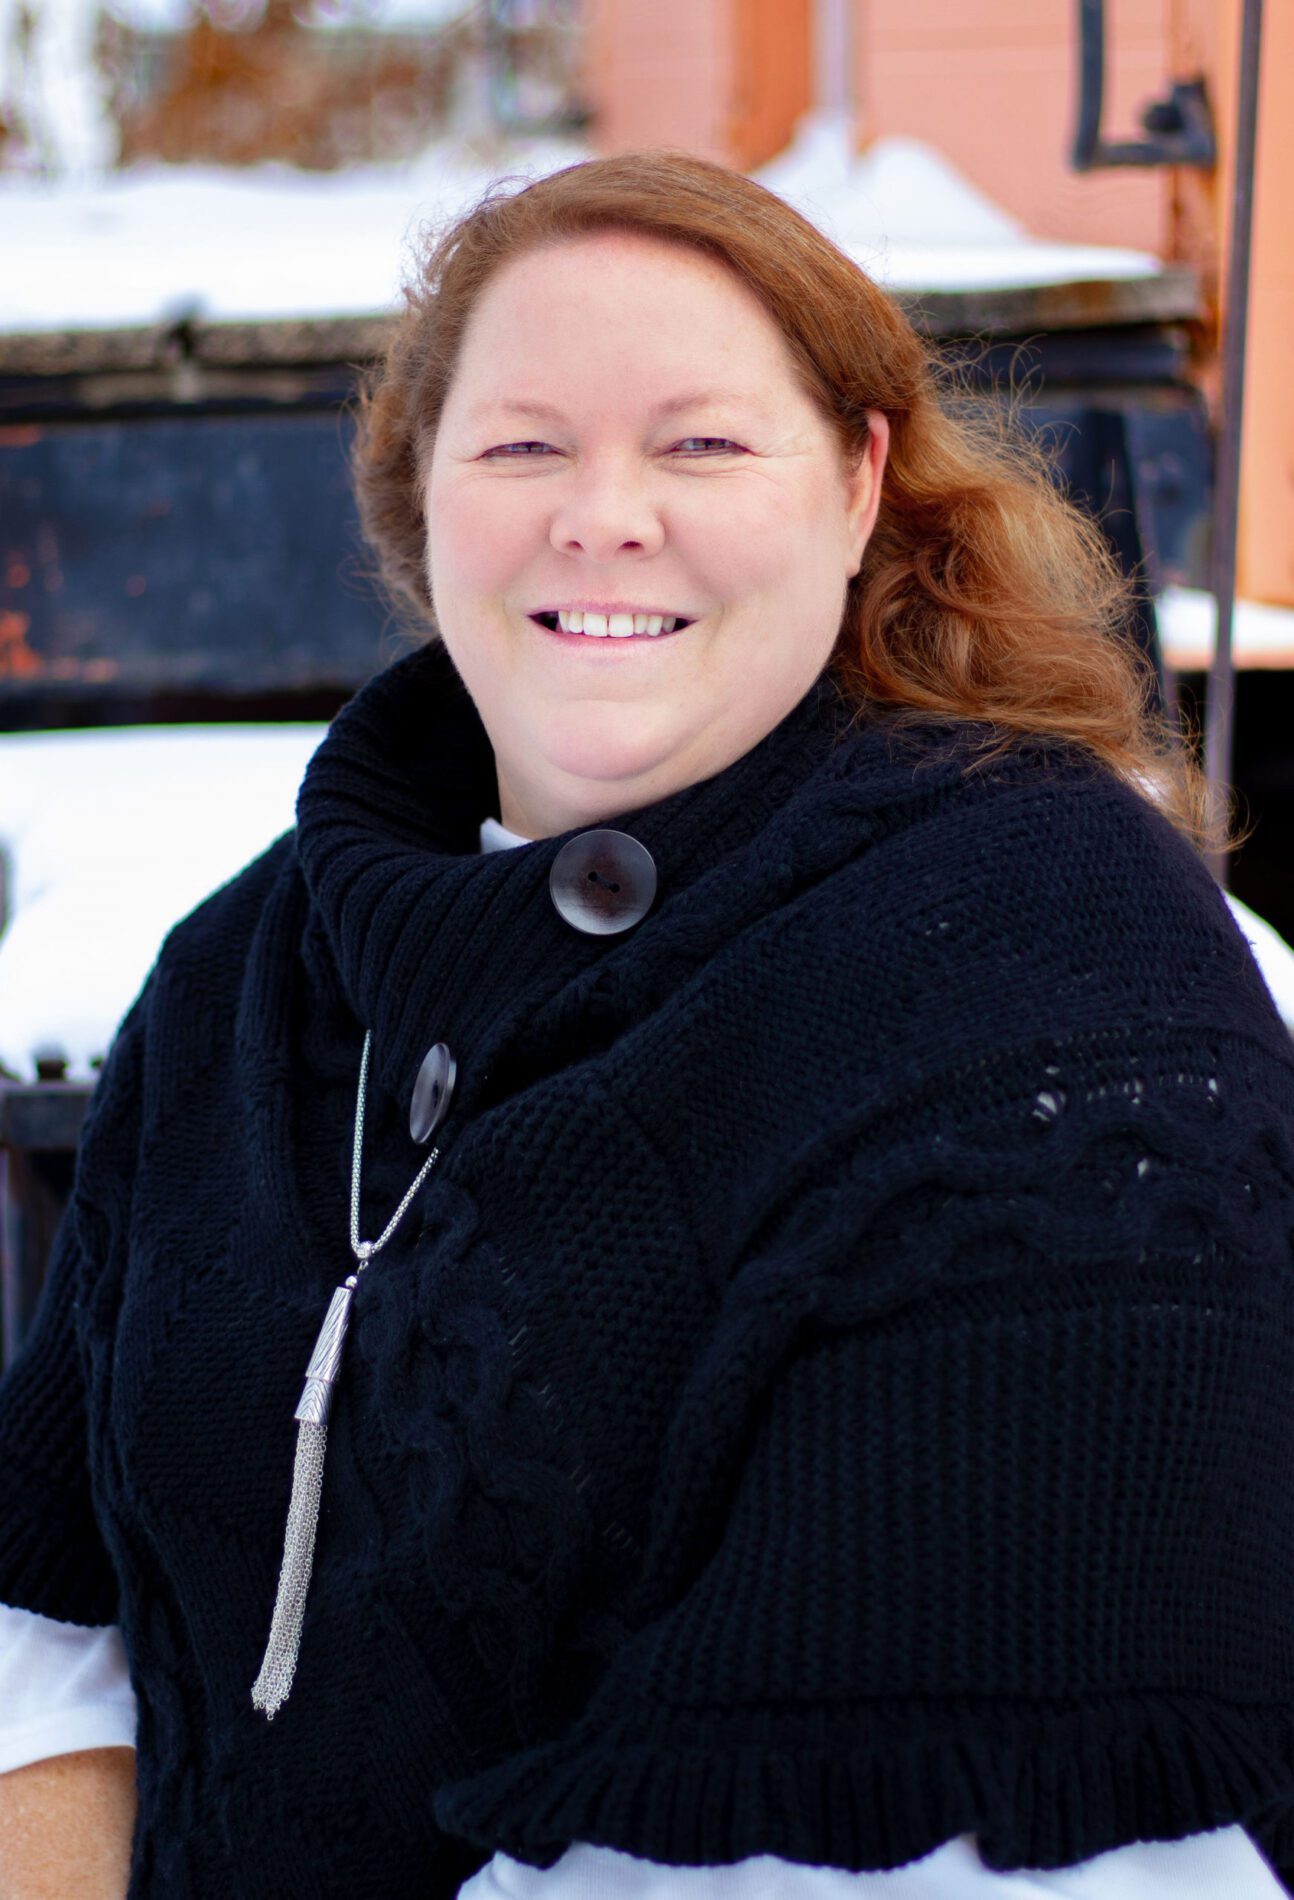 Dr. Erin Van Celdhuizen